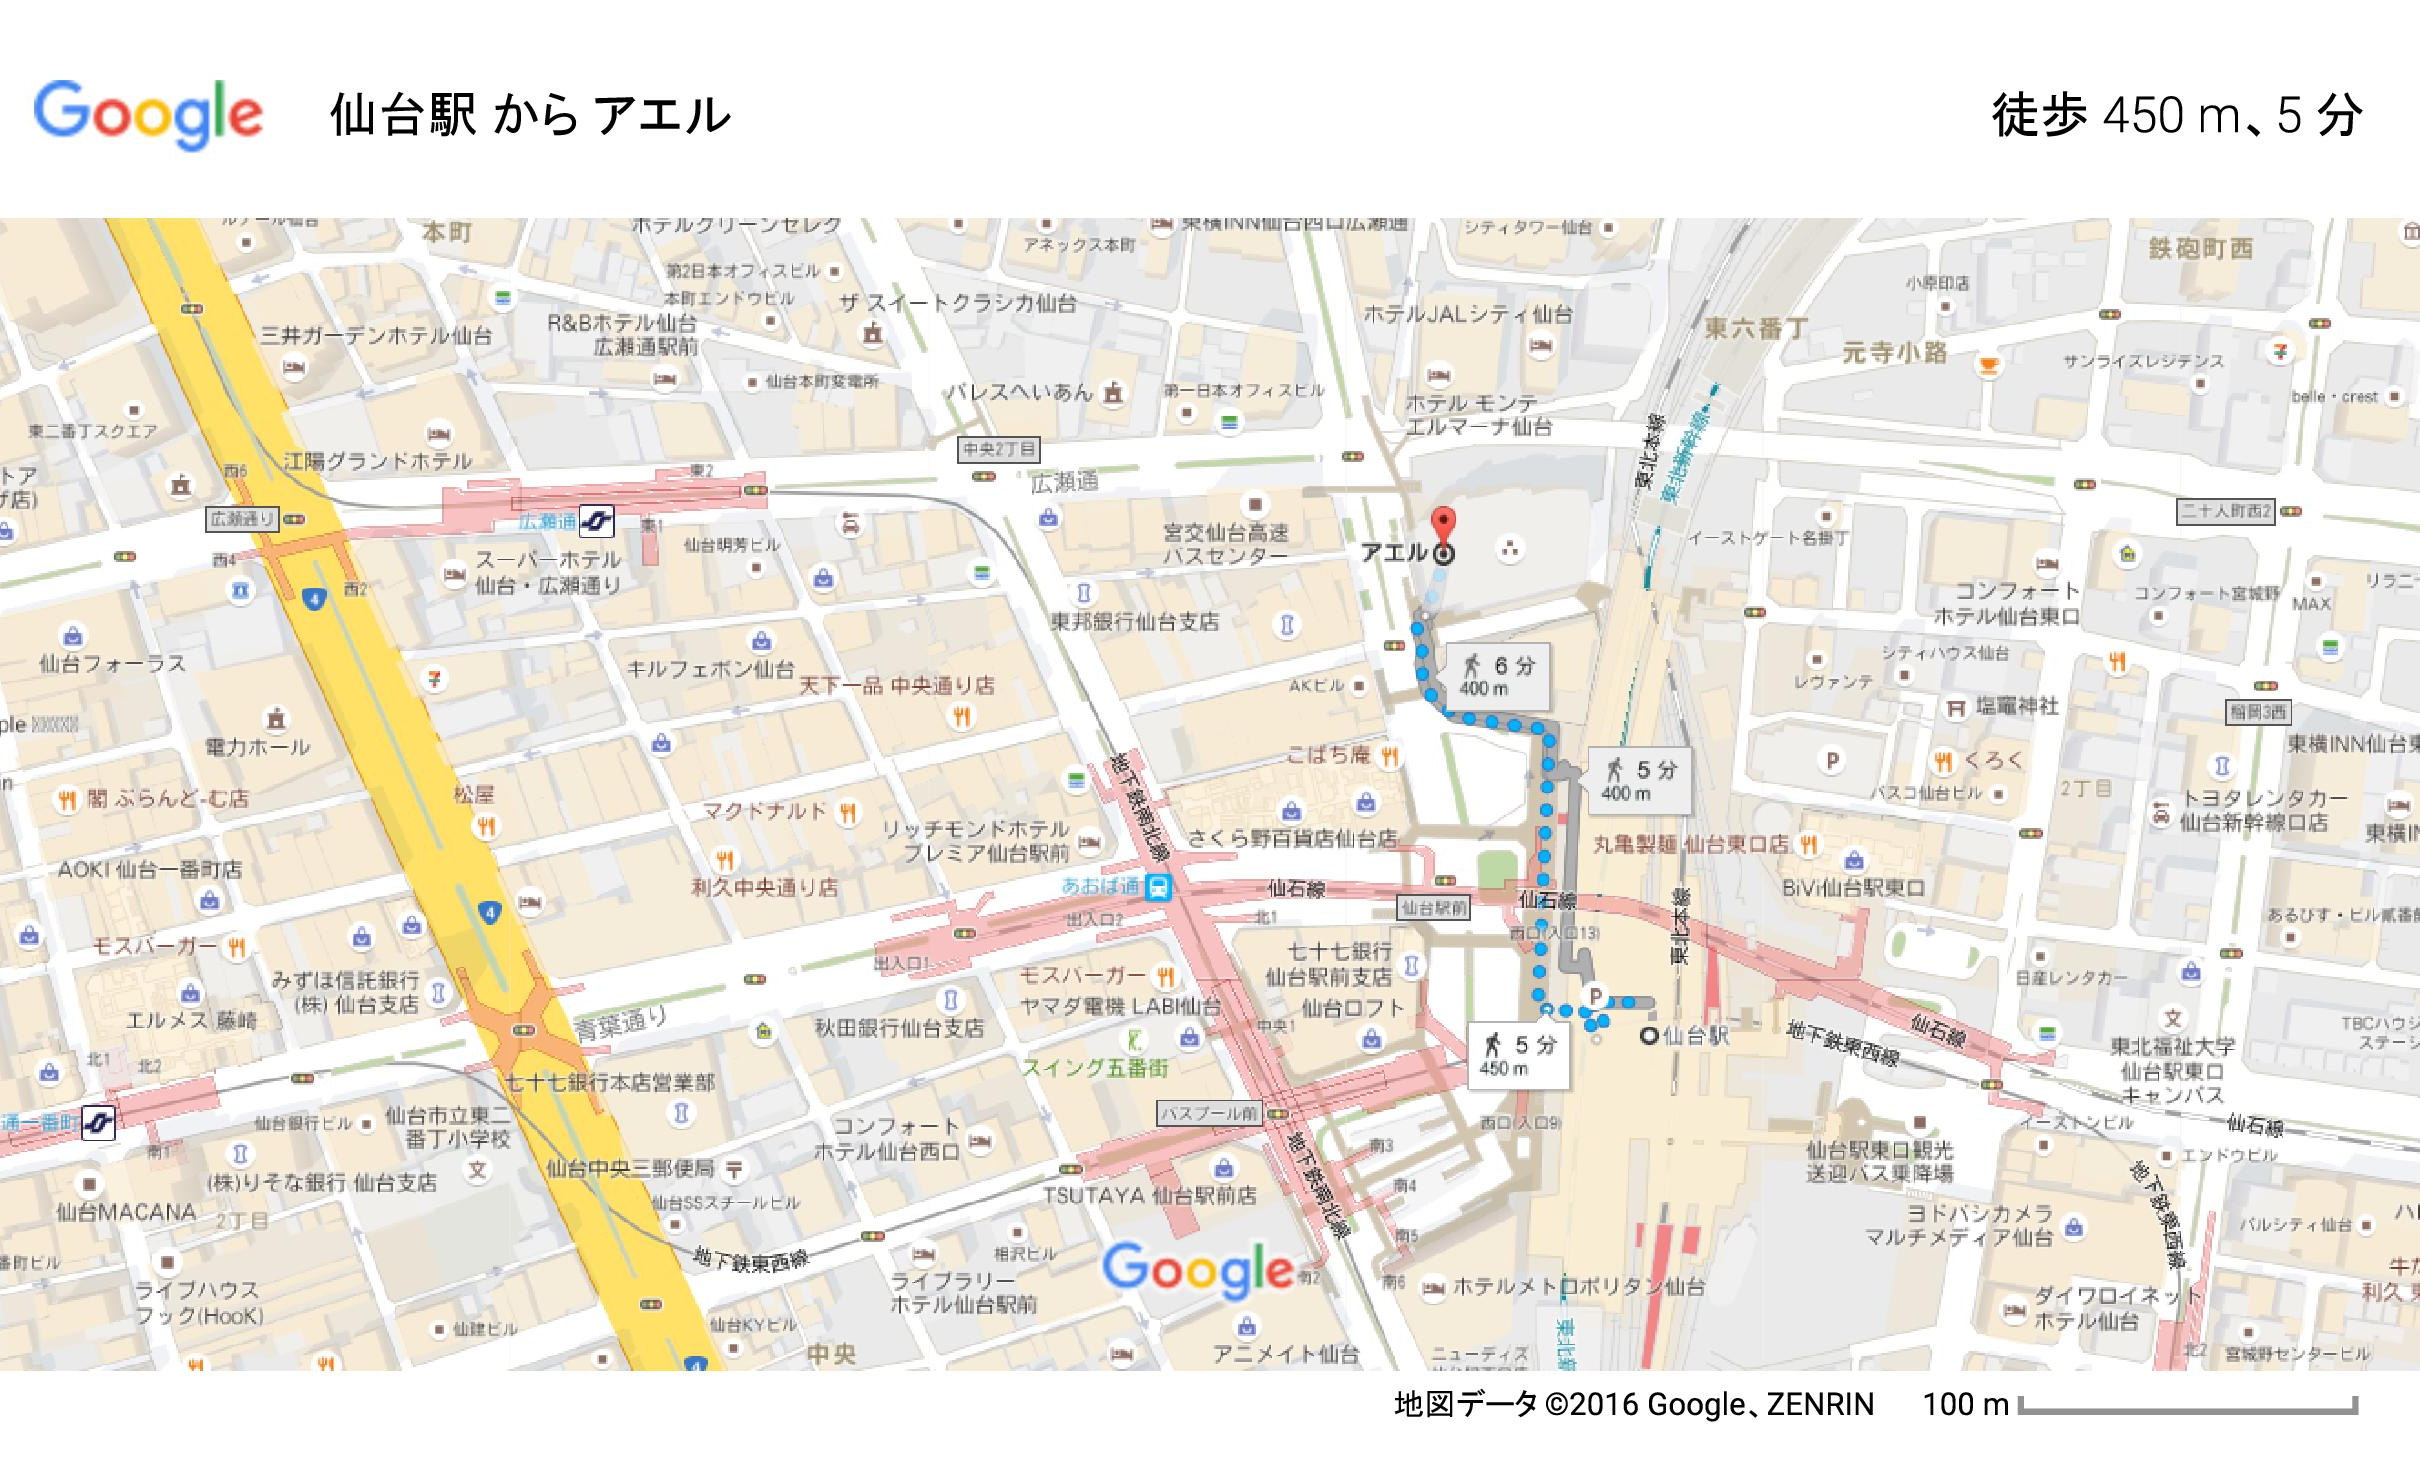 仙台駅 から アエル - Google マップ